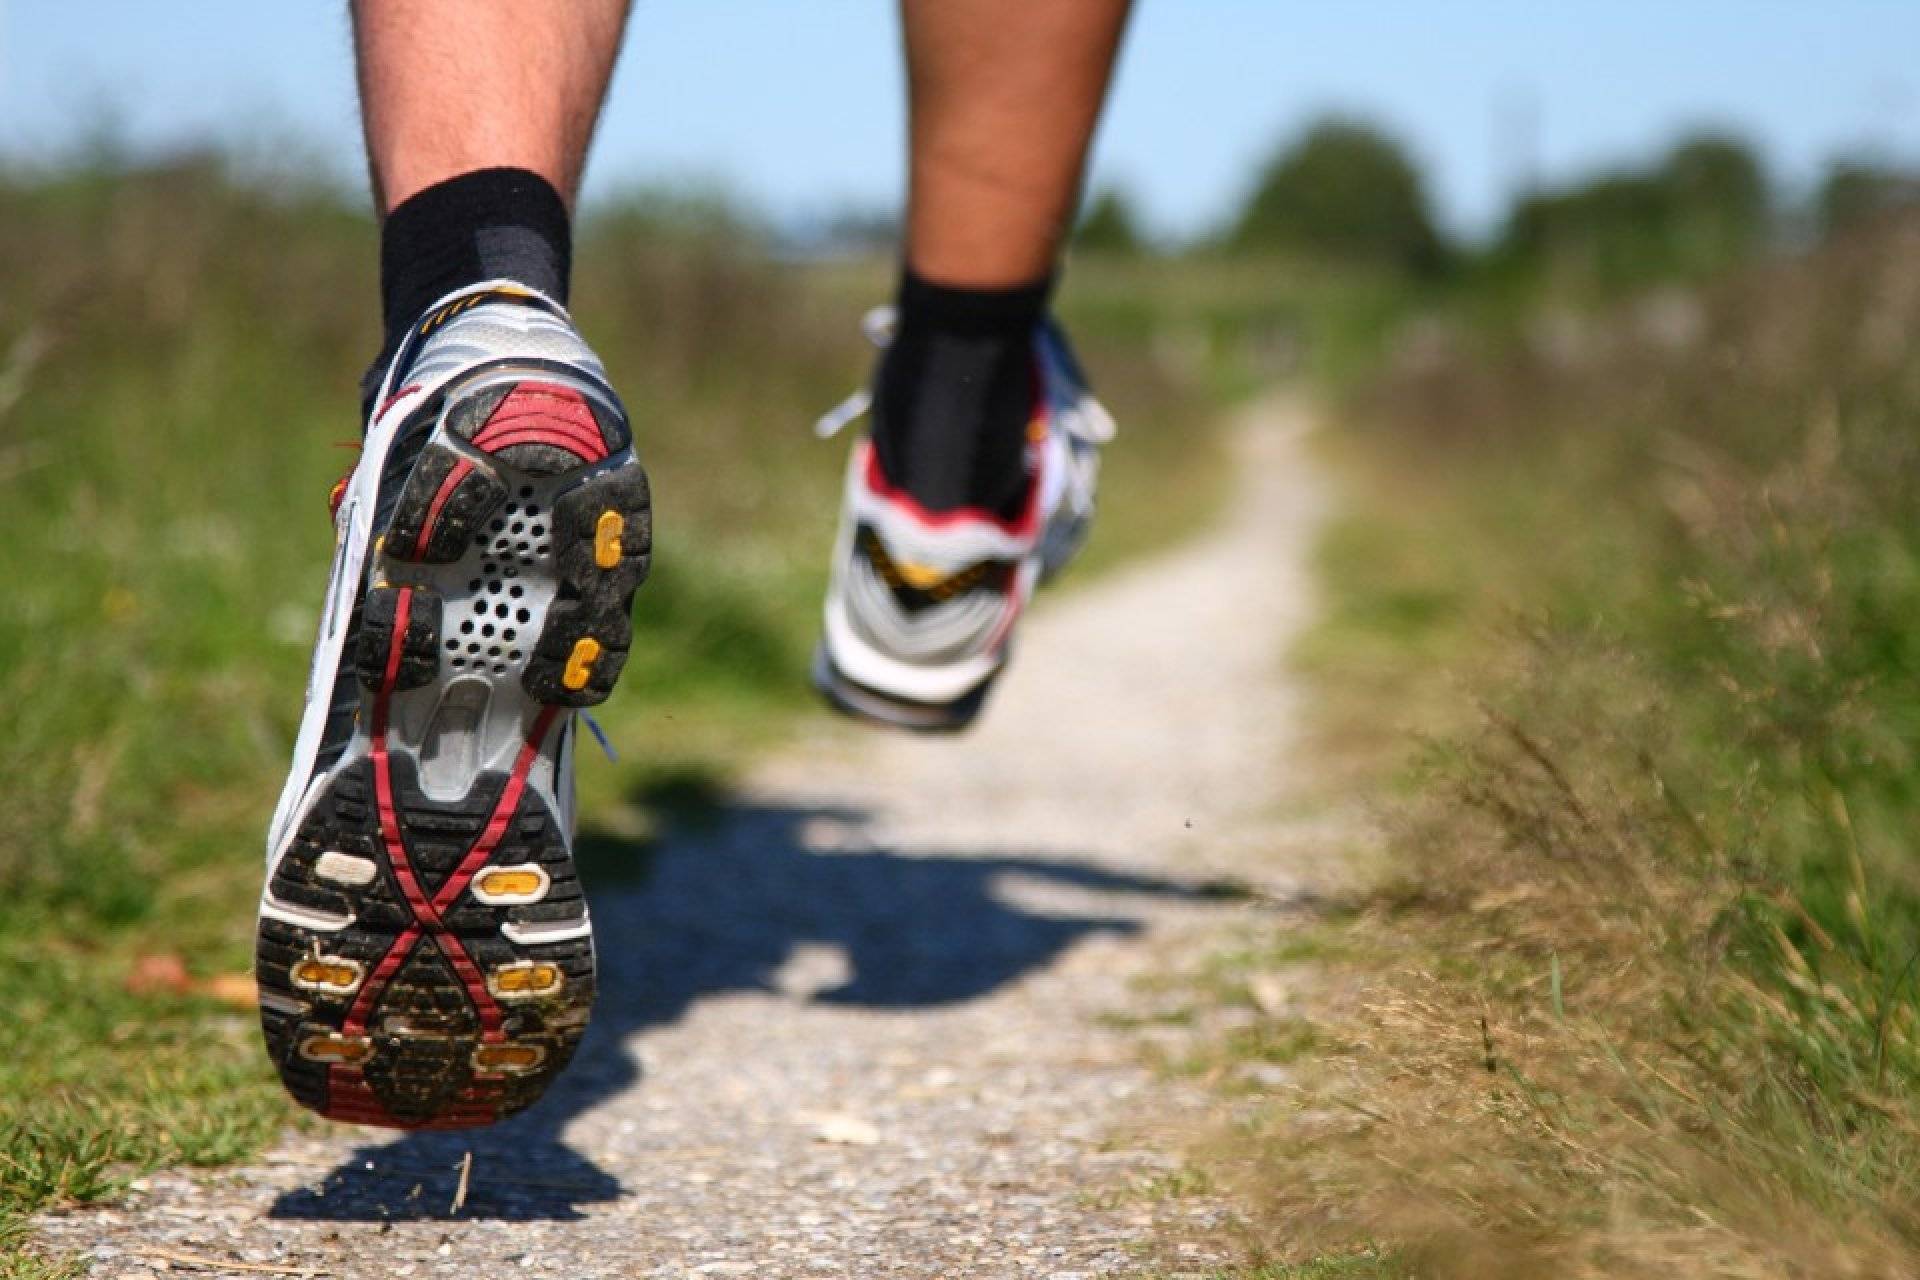 Как выбрать кроссовки для бега? гайд покупателя. 
как выбрать кроссовки для бега? гайд покупателя.